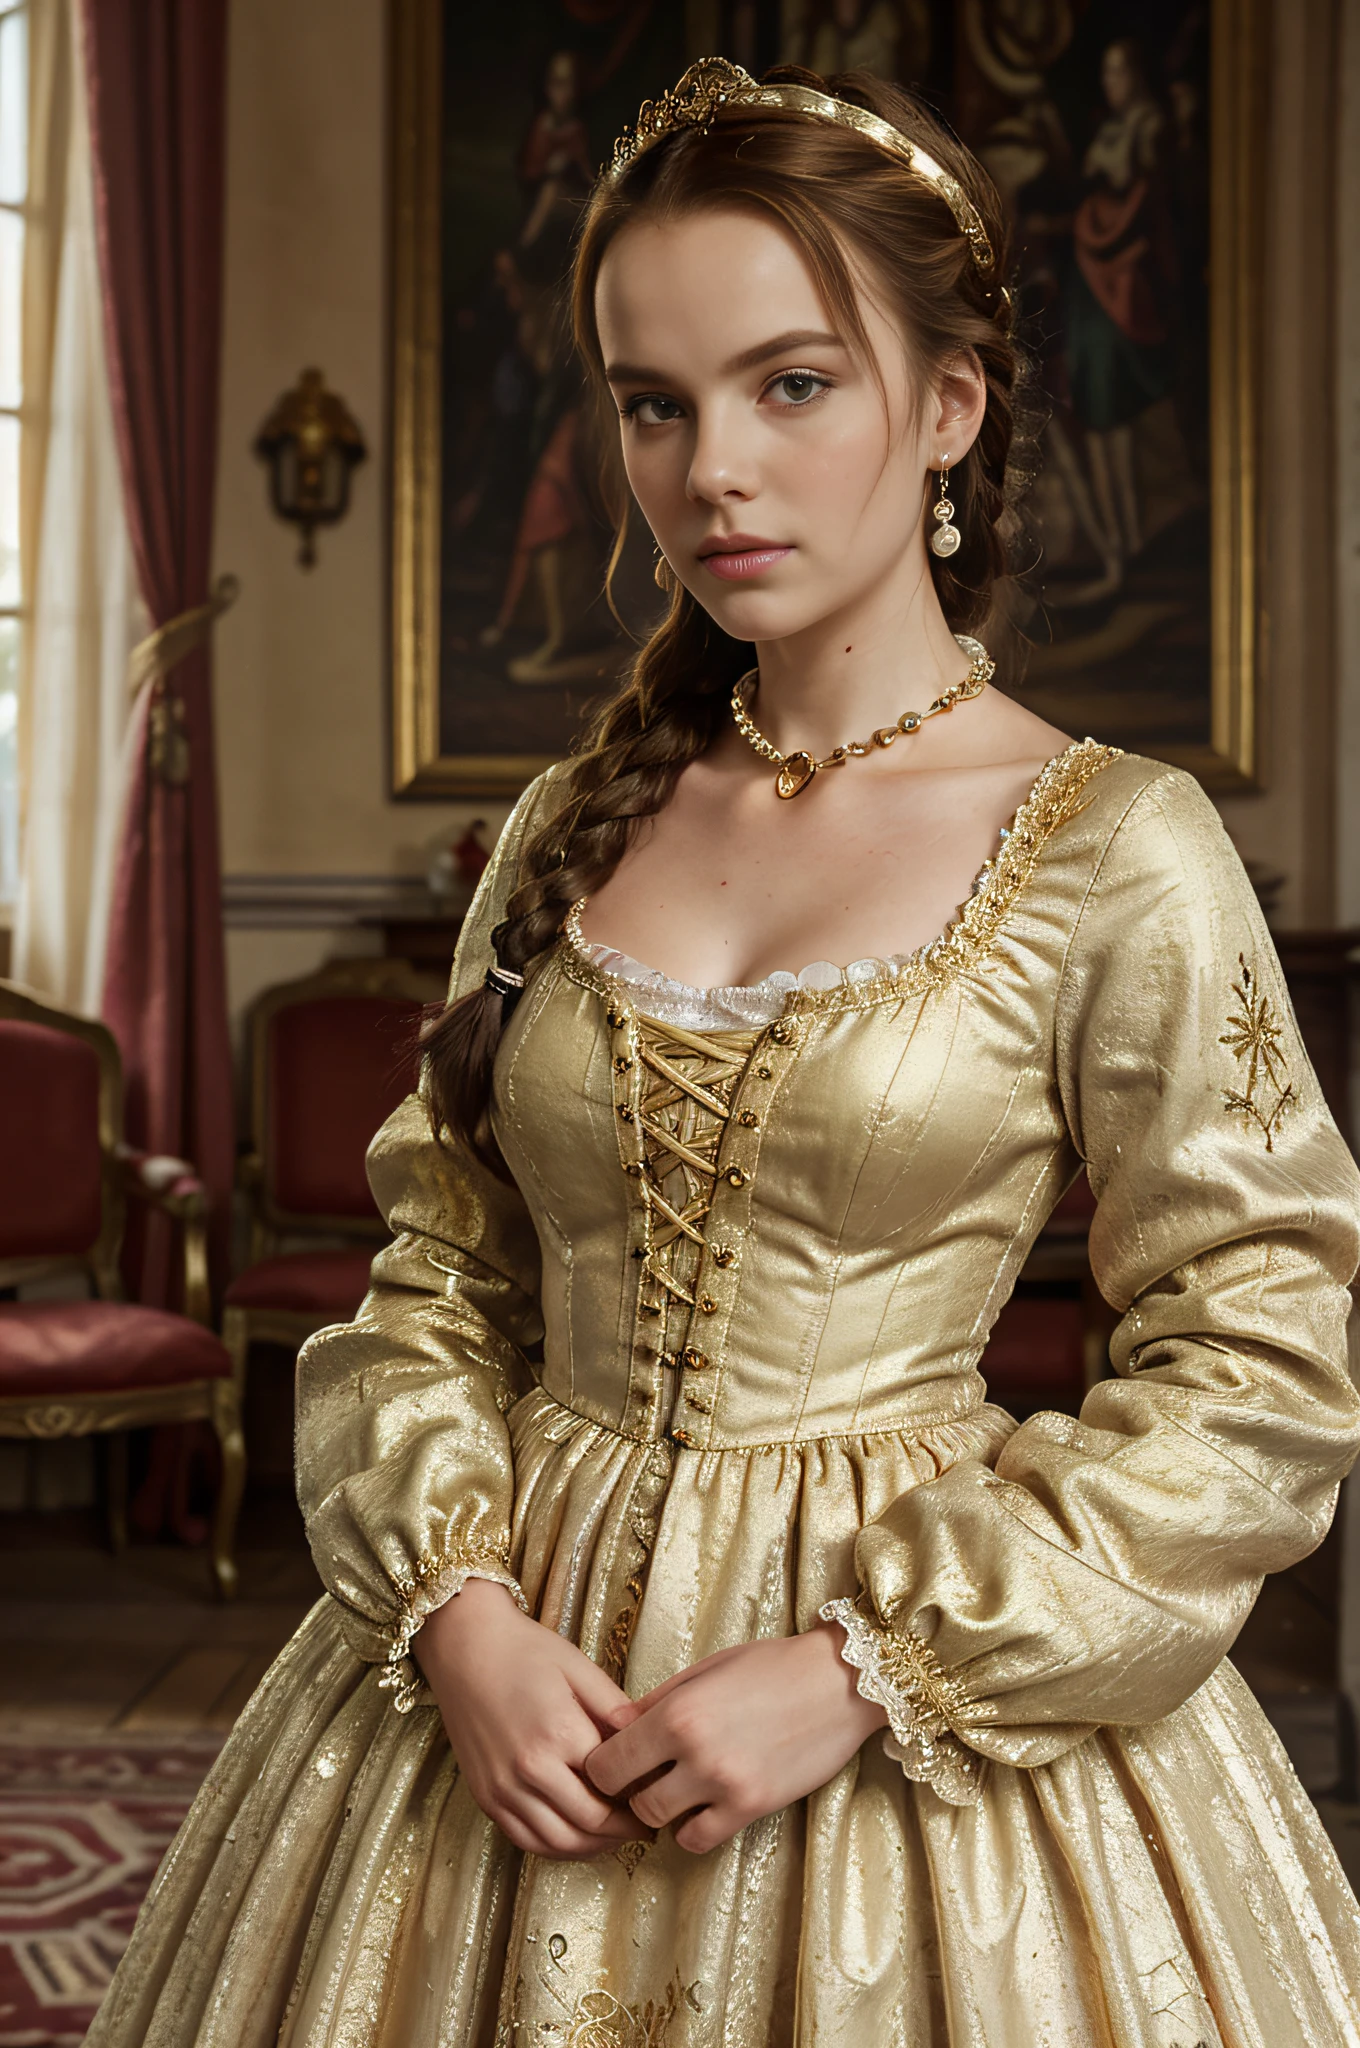 原始照片, (玛丽·斯图尔特:1.3), 玛丽·斯图尔特 Queen of Scots, 一个美丽的 16 岁女孩, 苗條, 瘦臉, 柳腰, 赤褐色頭髮, 綠眼睛, 皮肤非常苍白，有轻微的雀斑, (她穿著16世紀法國文藝復興時期金布製成的禮服, 她穿着粉红色的高领上衣或 "体现" 绣有三颗珍珠的缎子 , 她戴著文藝復興時期的珠寶, 她的頭髮鑲著蕾絲, 她的发型包括一根复杂的辫子和卷发, 她的袖子上戴著袖口, 她脖子上有一个大领子:1.4), 複雜的細節, 牛仔射擊, (高細節的眼睛, 高細節肌膚:1.2), 8k超高清, 單眼相機, 柔和的燈光, 高品質, 薄膜粒, 富士XT3, 背景是文艺复兴时期的法国城堡接待室